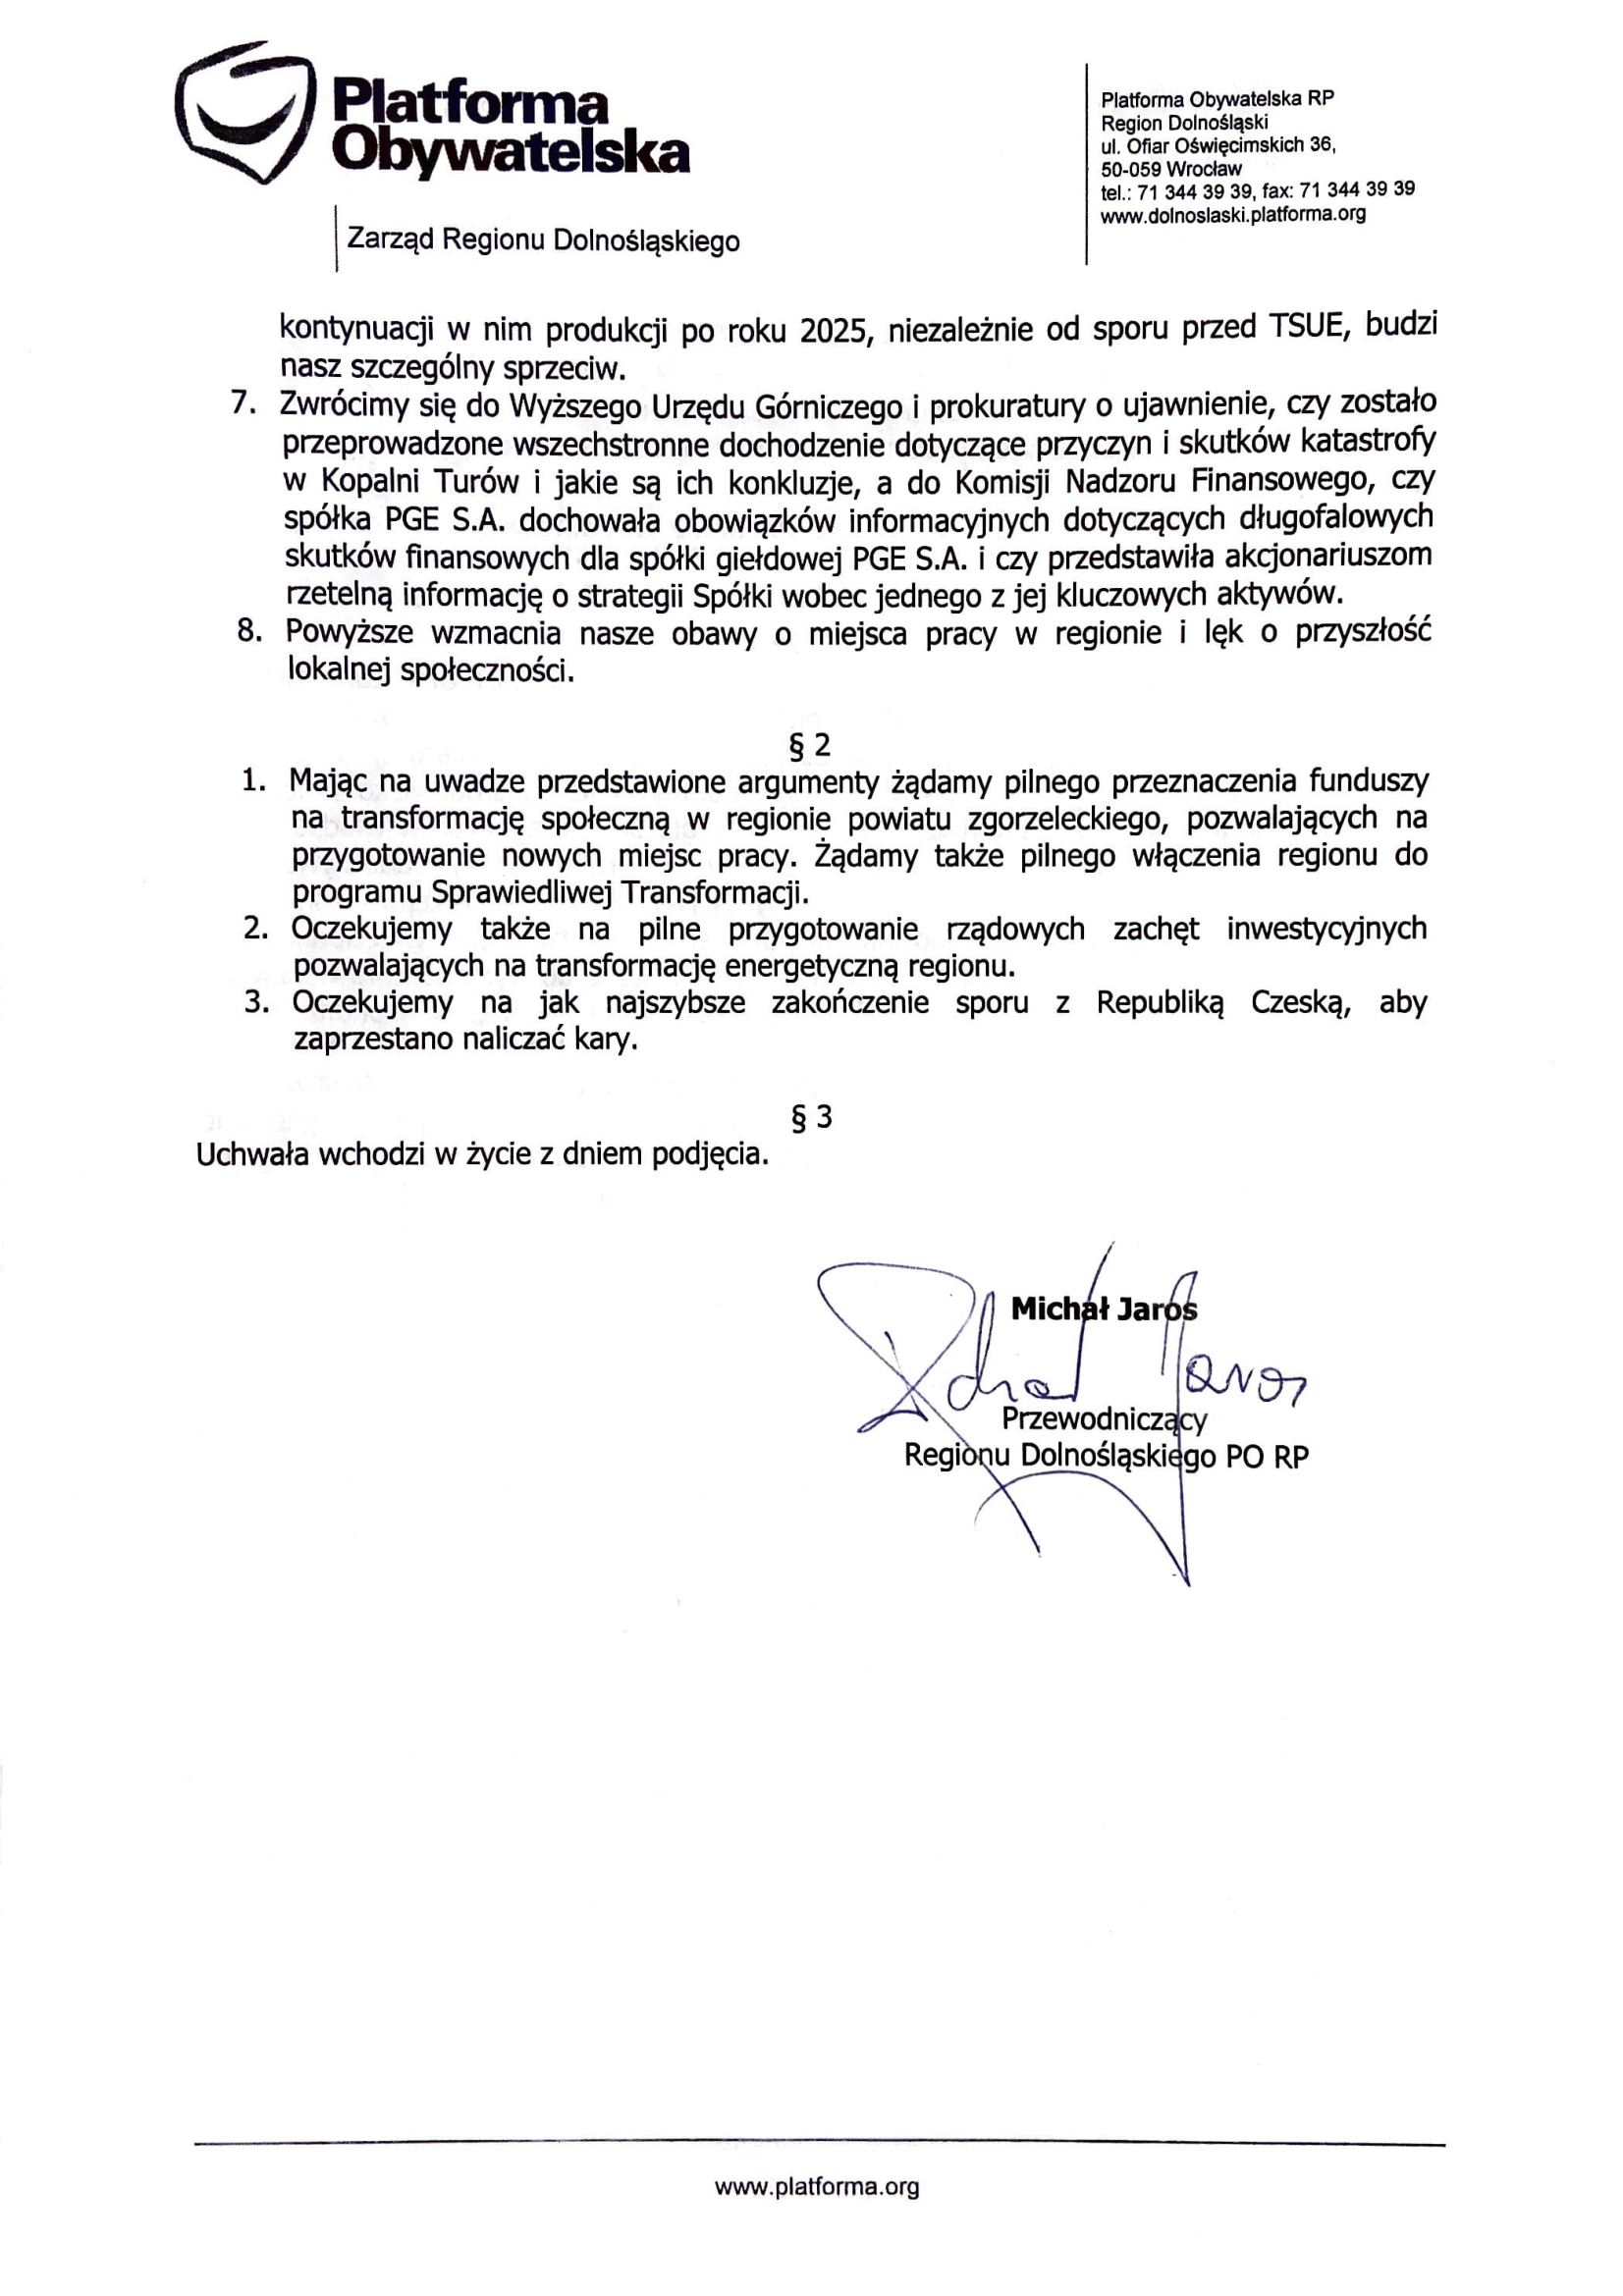 Stanowisko Zarządu Regionu Dolnośląskiego PO RP w sprawie sytuacji w Zagłębiu Turoszowskim, a także podjętą w związku z tym uchwała